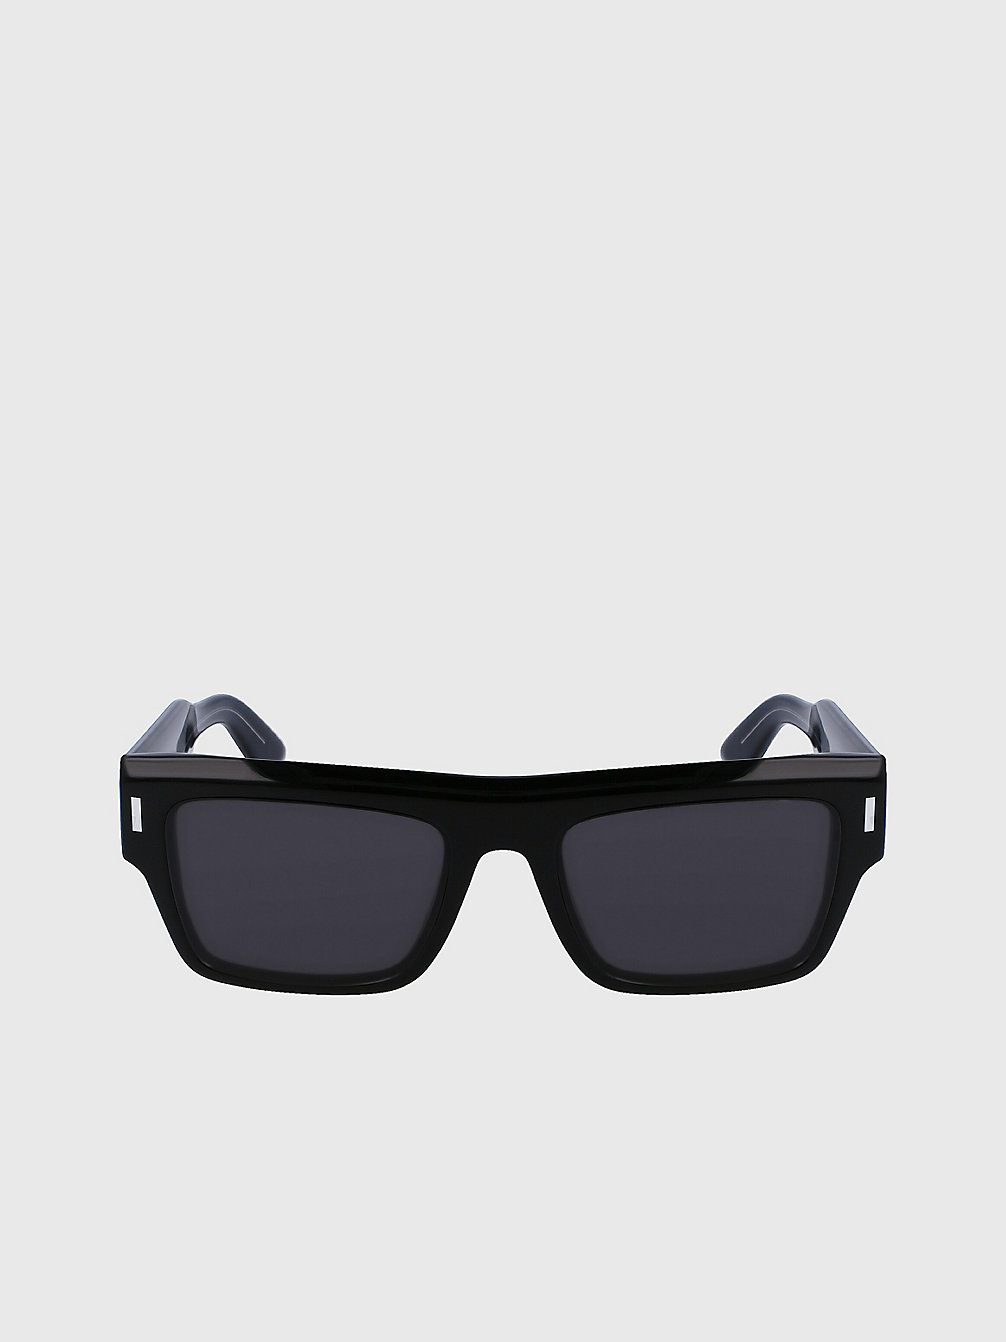 BLACK > Quadratische Sonnenbrille Ck23504s > undefined unisex - Calvin Klein